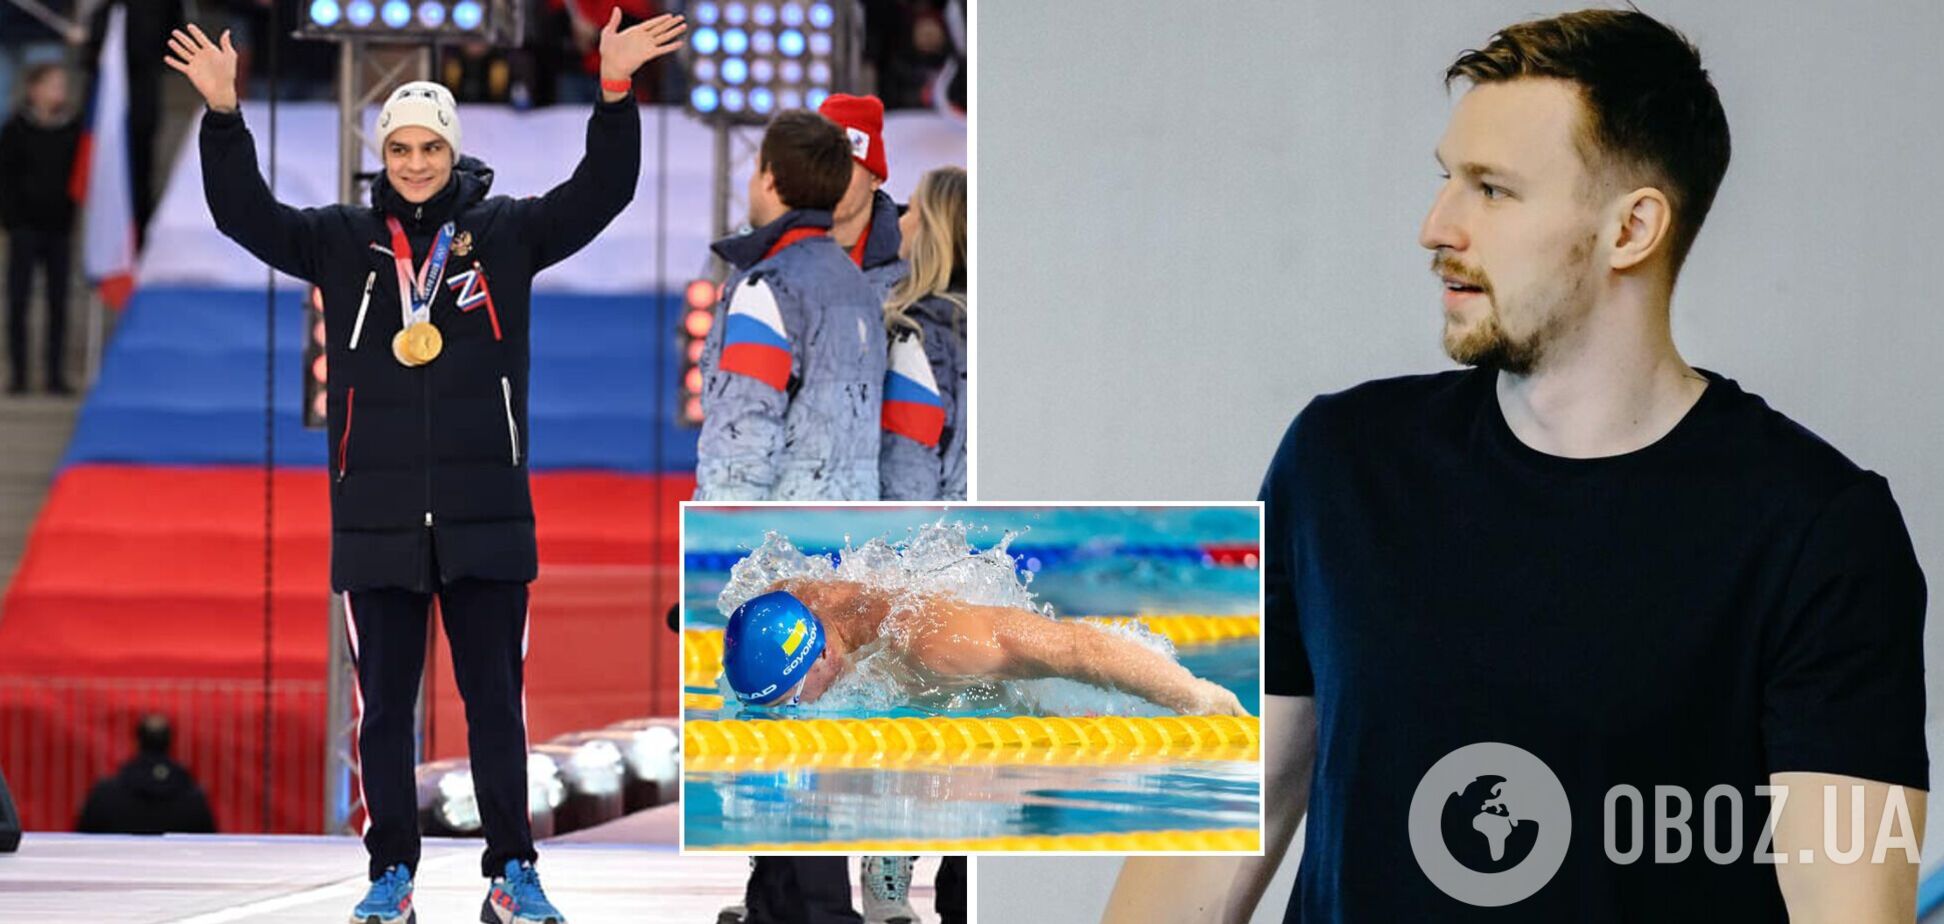 'Считал сочувствующим, а оказался мразью': украинский рекордсмен хочет пожизненного 'бана' для пловца из РФ, поддержавшего Путина